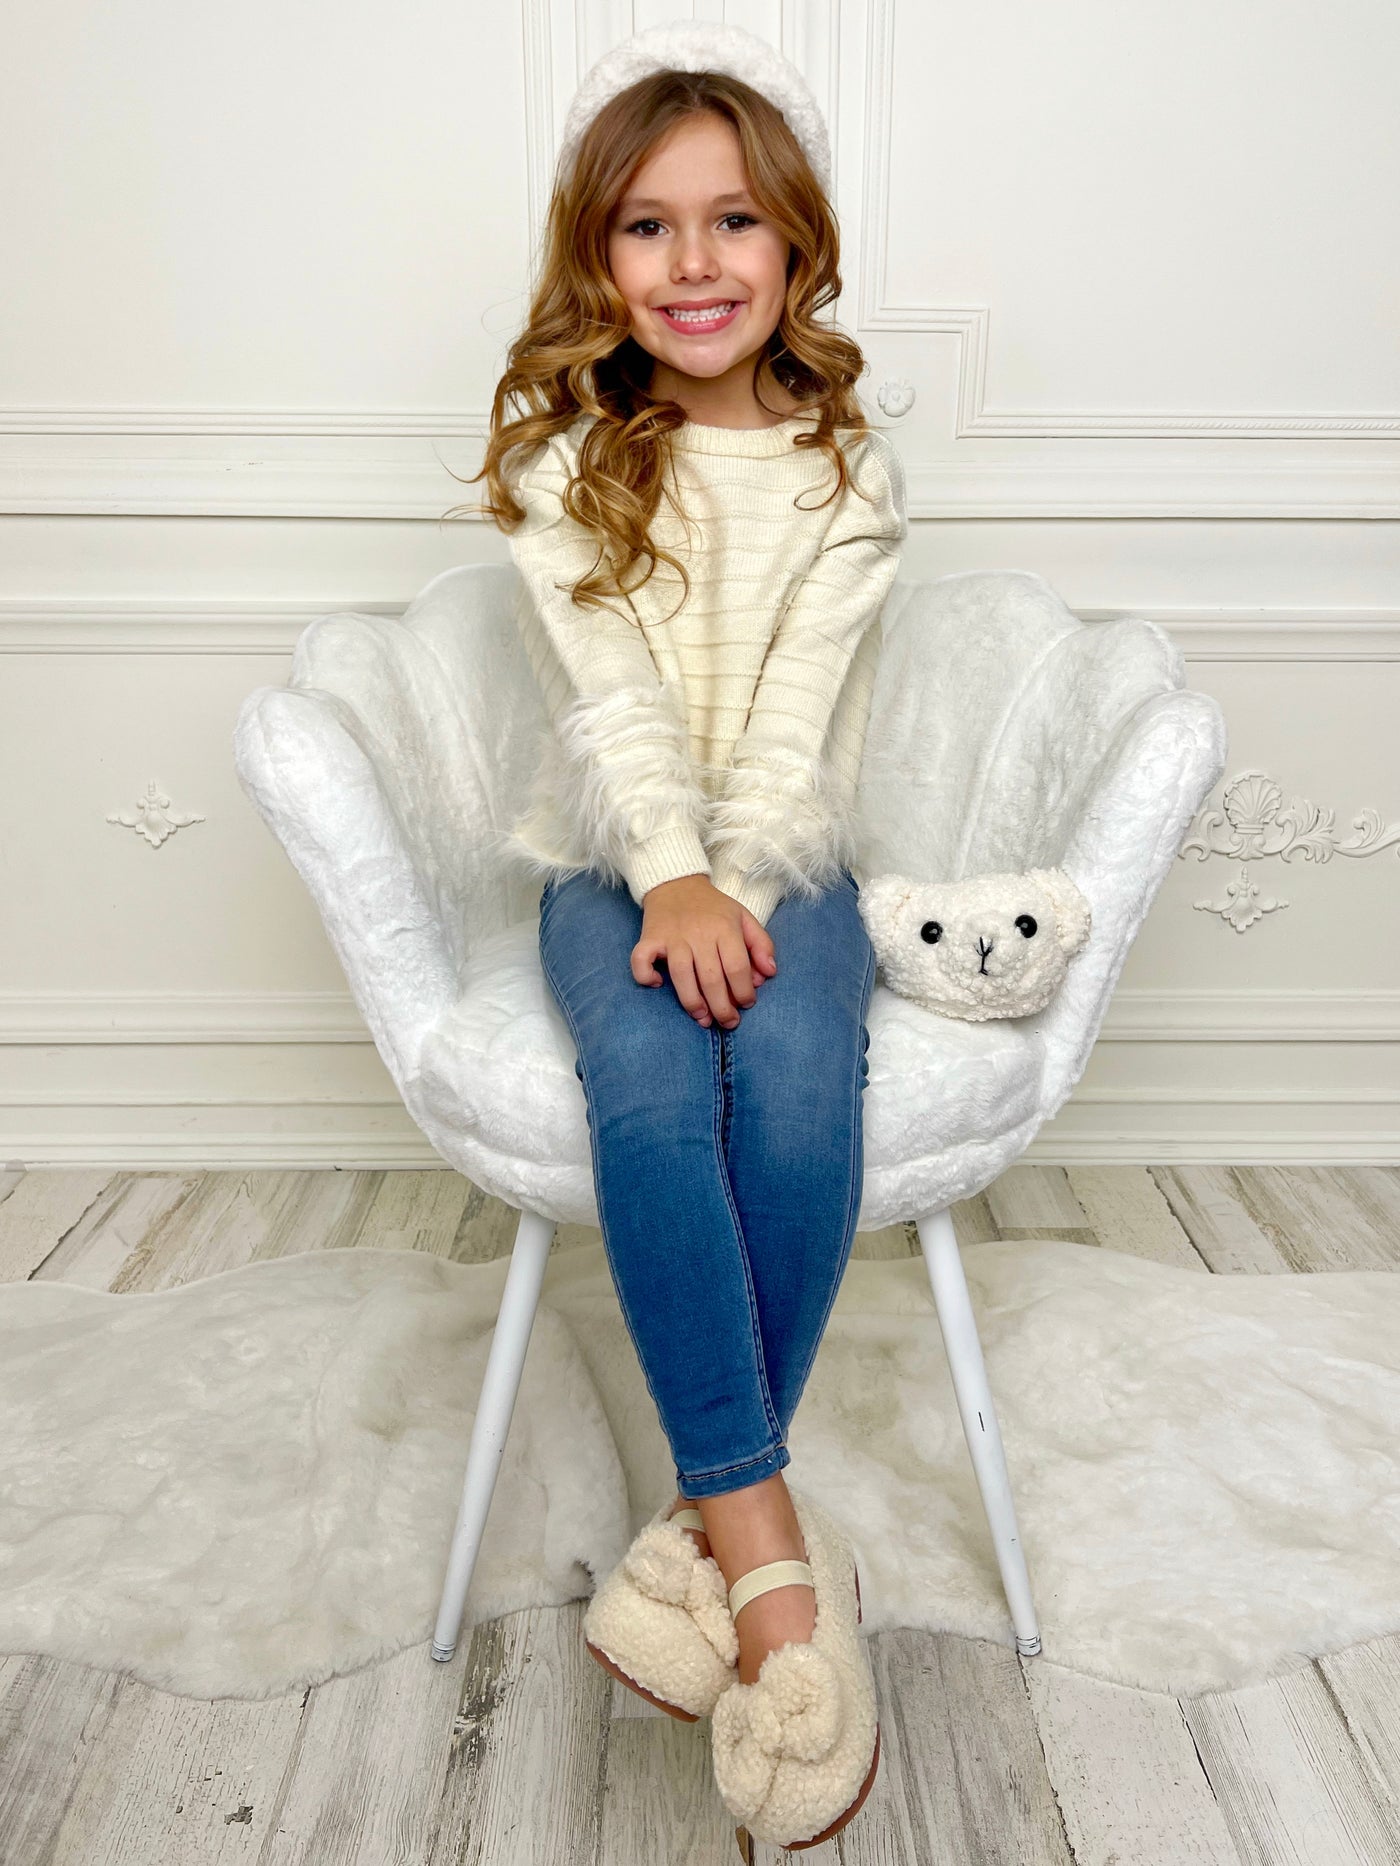 Mia Belle Girls Furry Knit Sweater | Girls Winter Tops